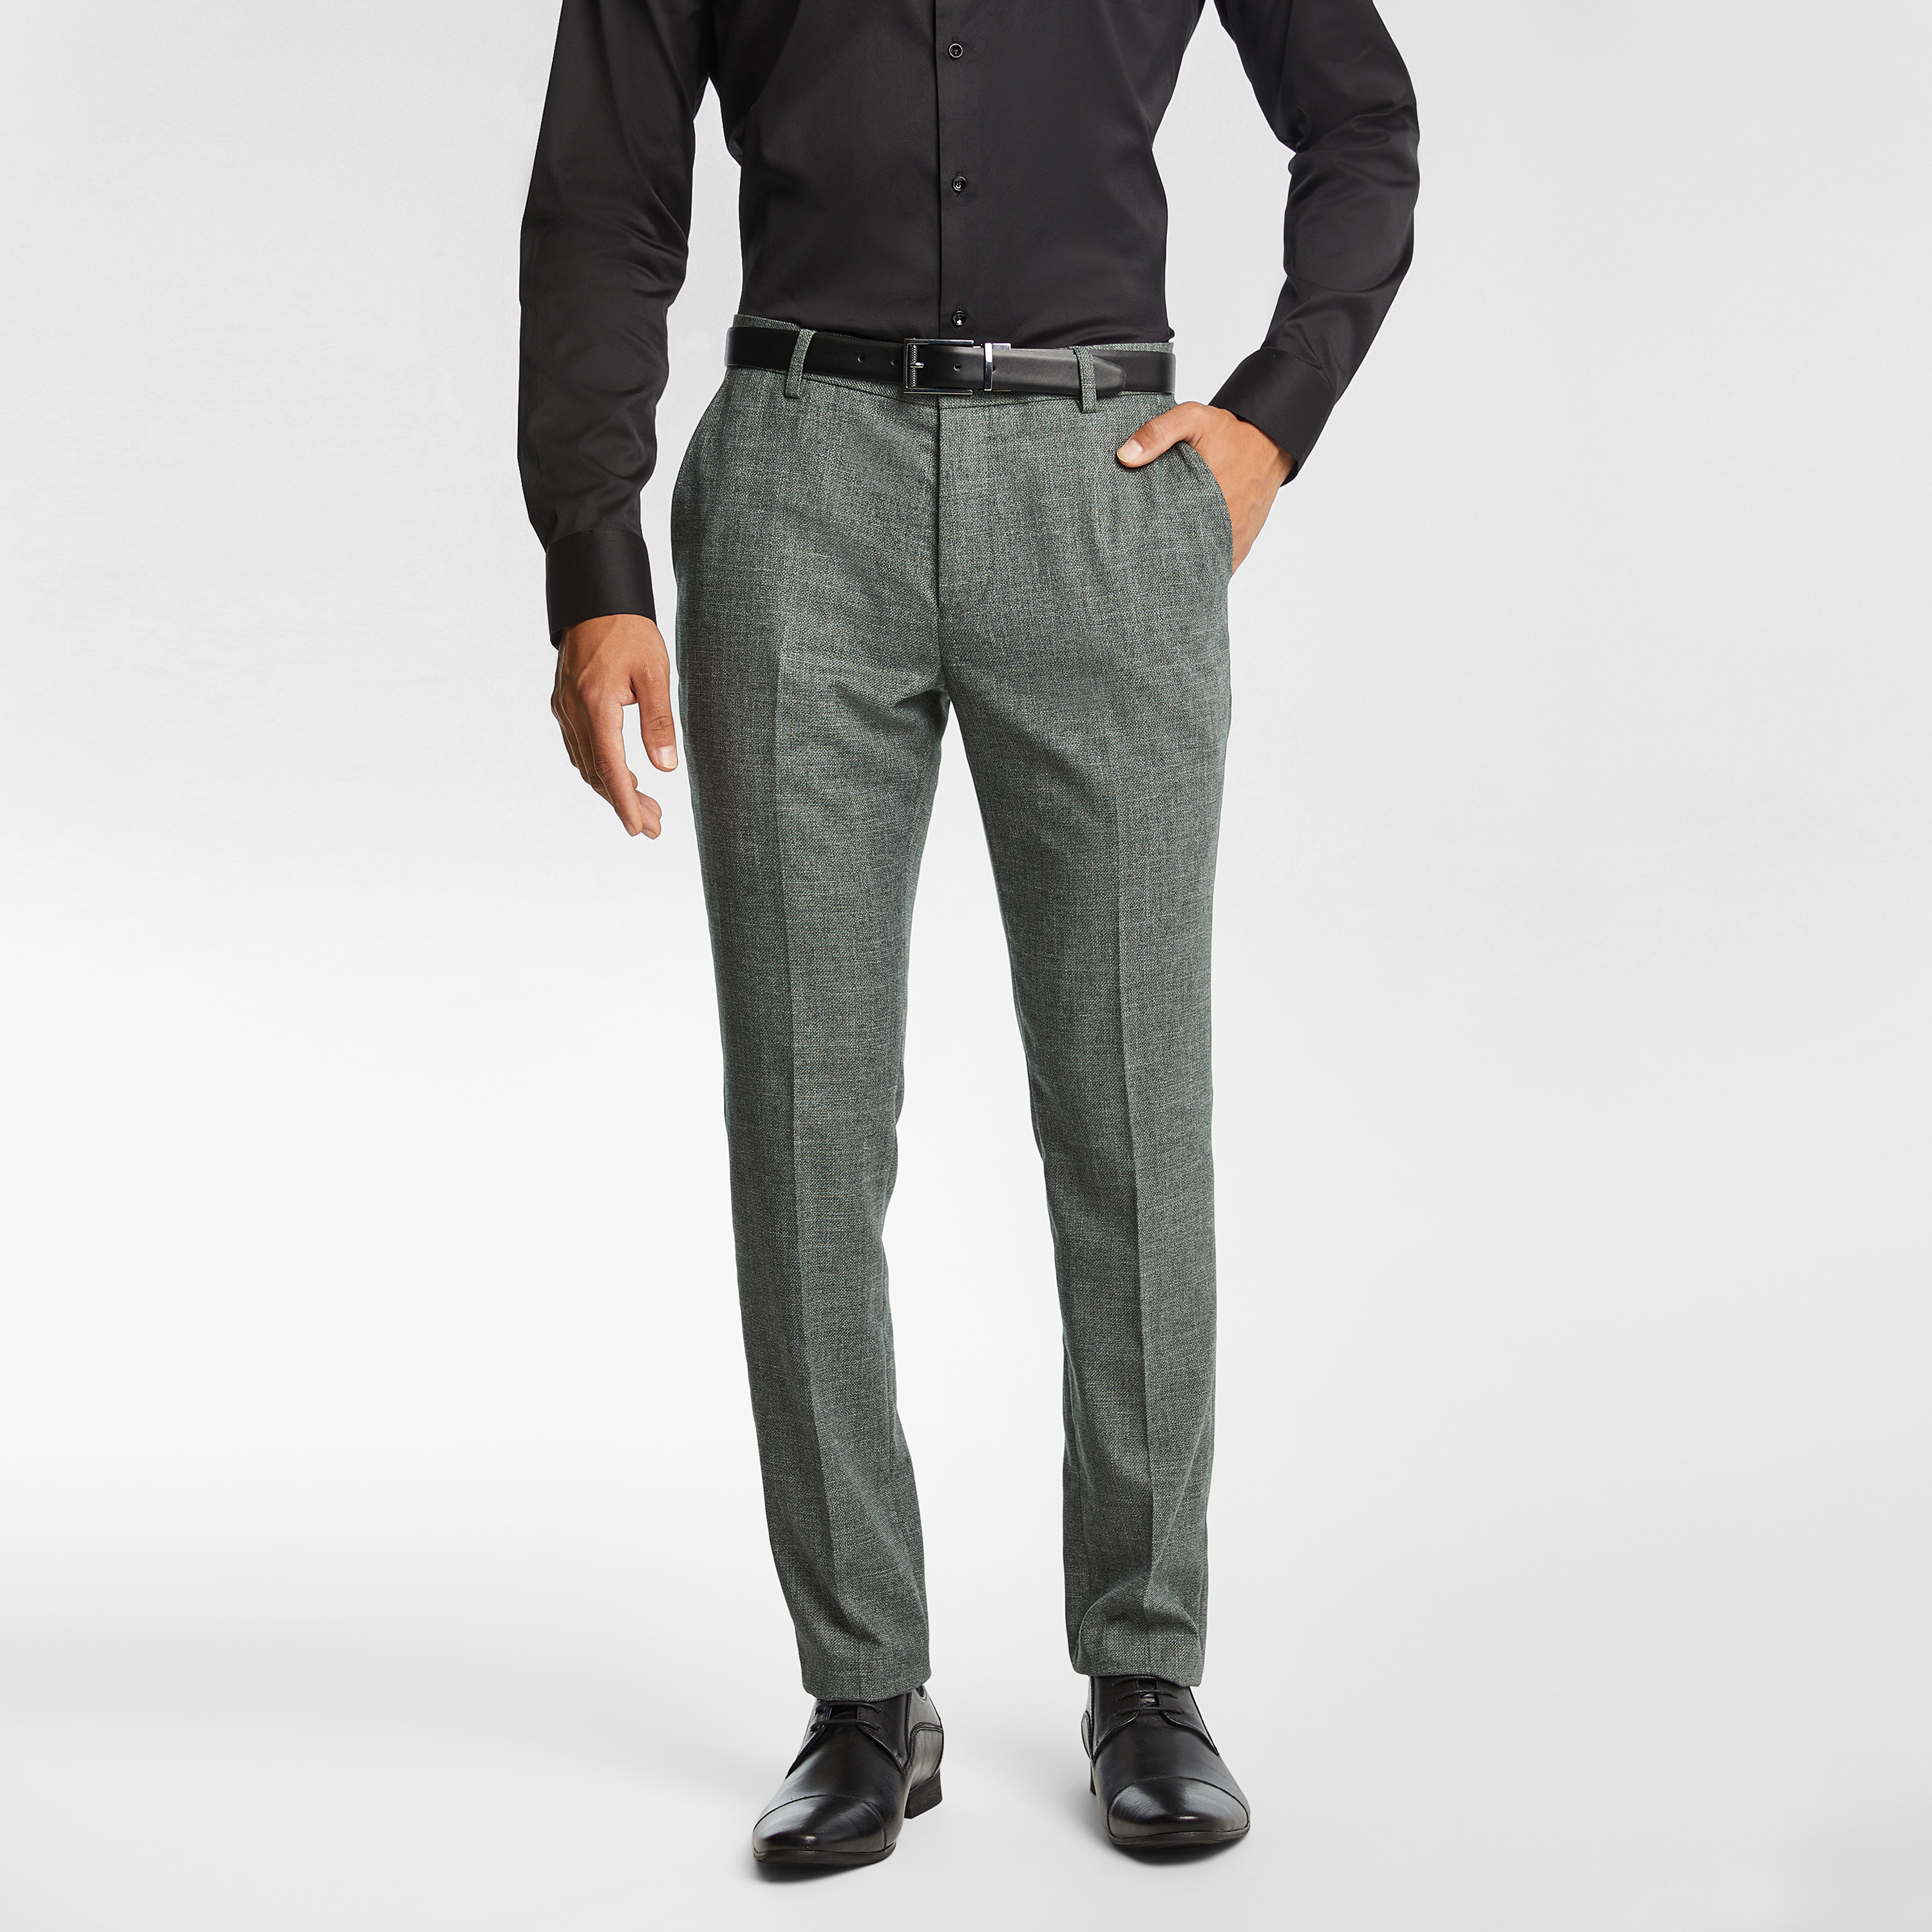 16 Black Blazer Grey Pants Styles For Men - The Versatile Man | Black shirt  outfits, Black blazer men, Grey pants men